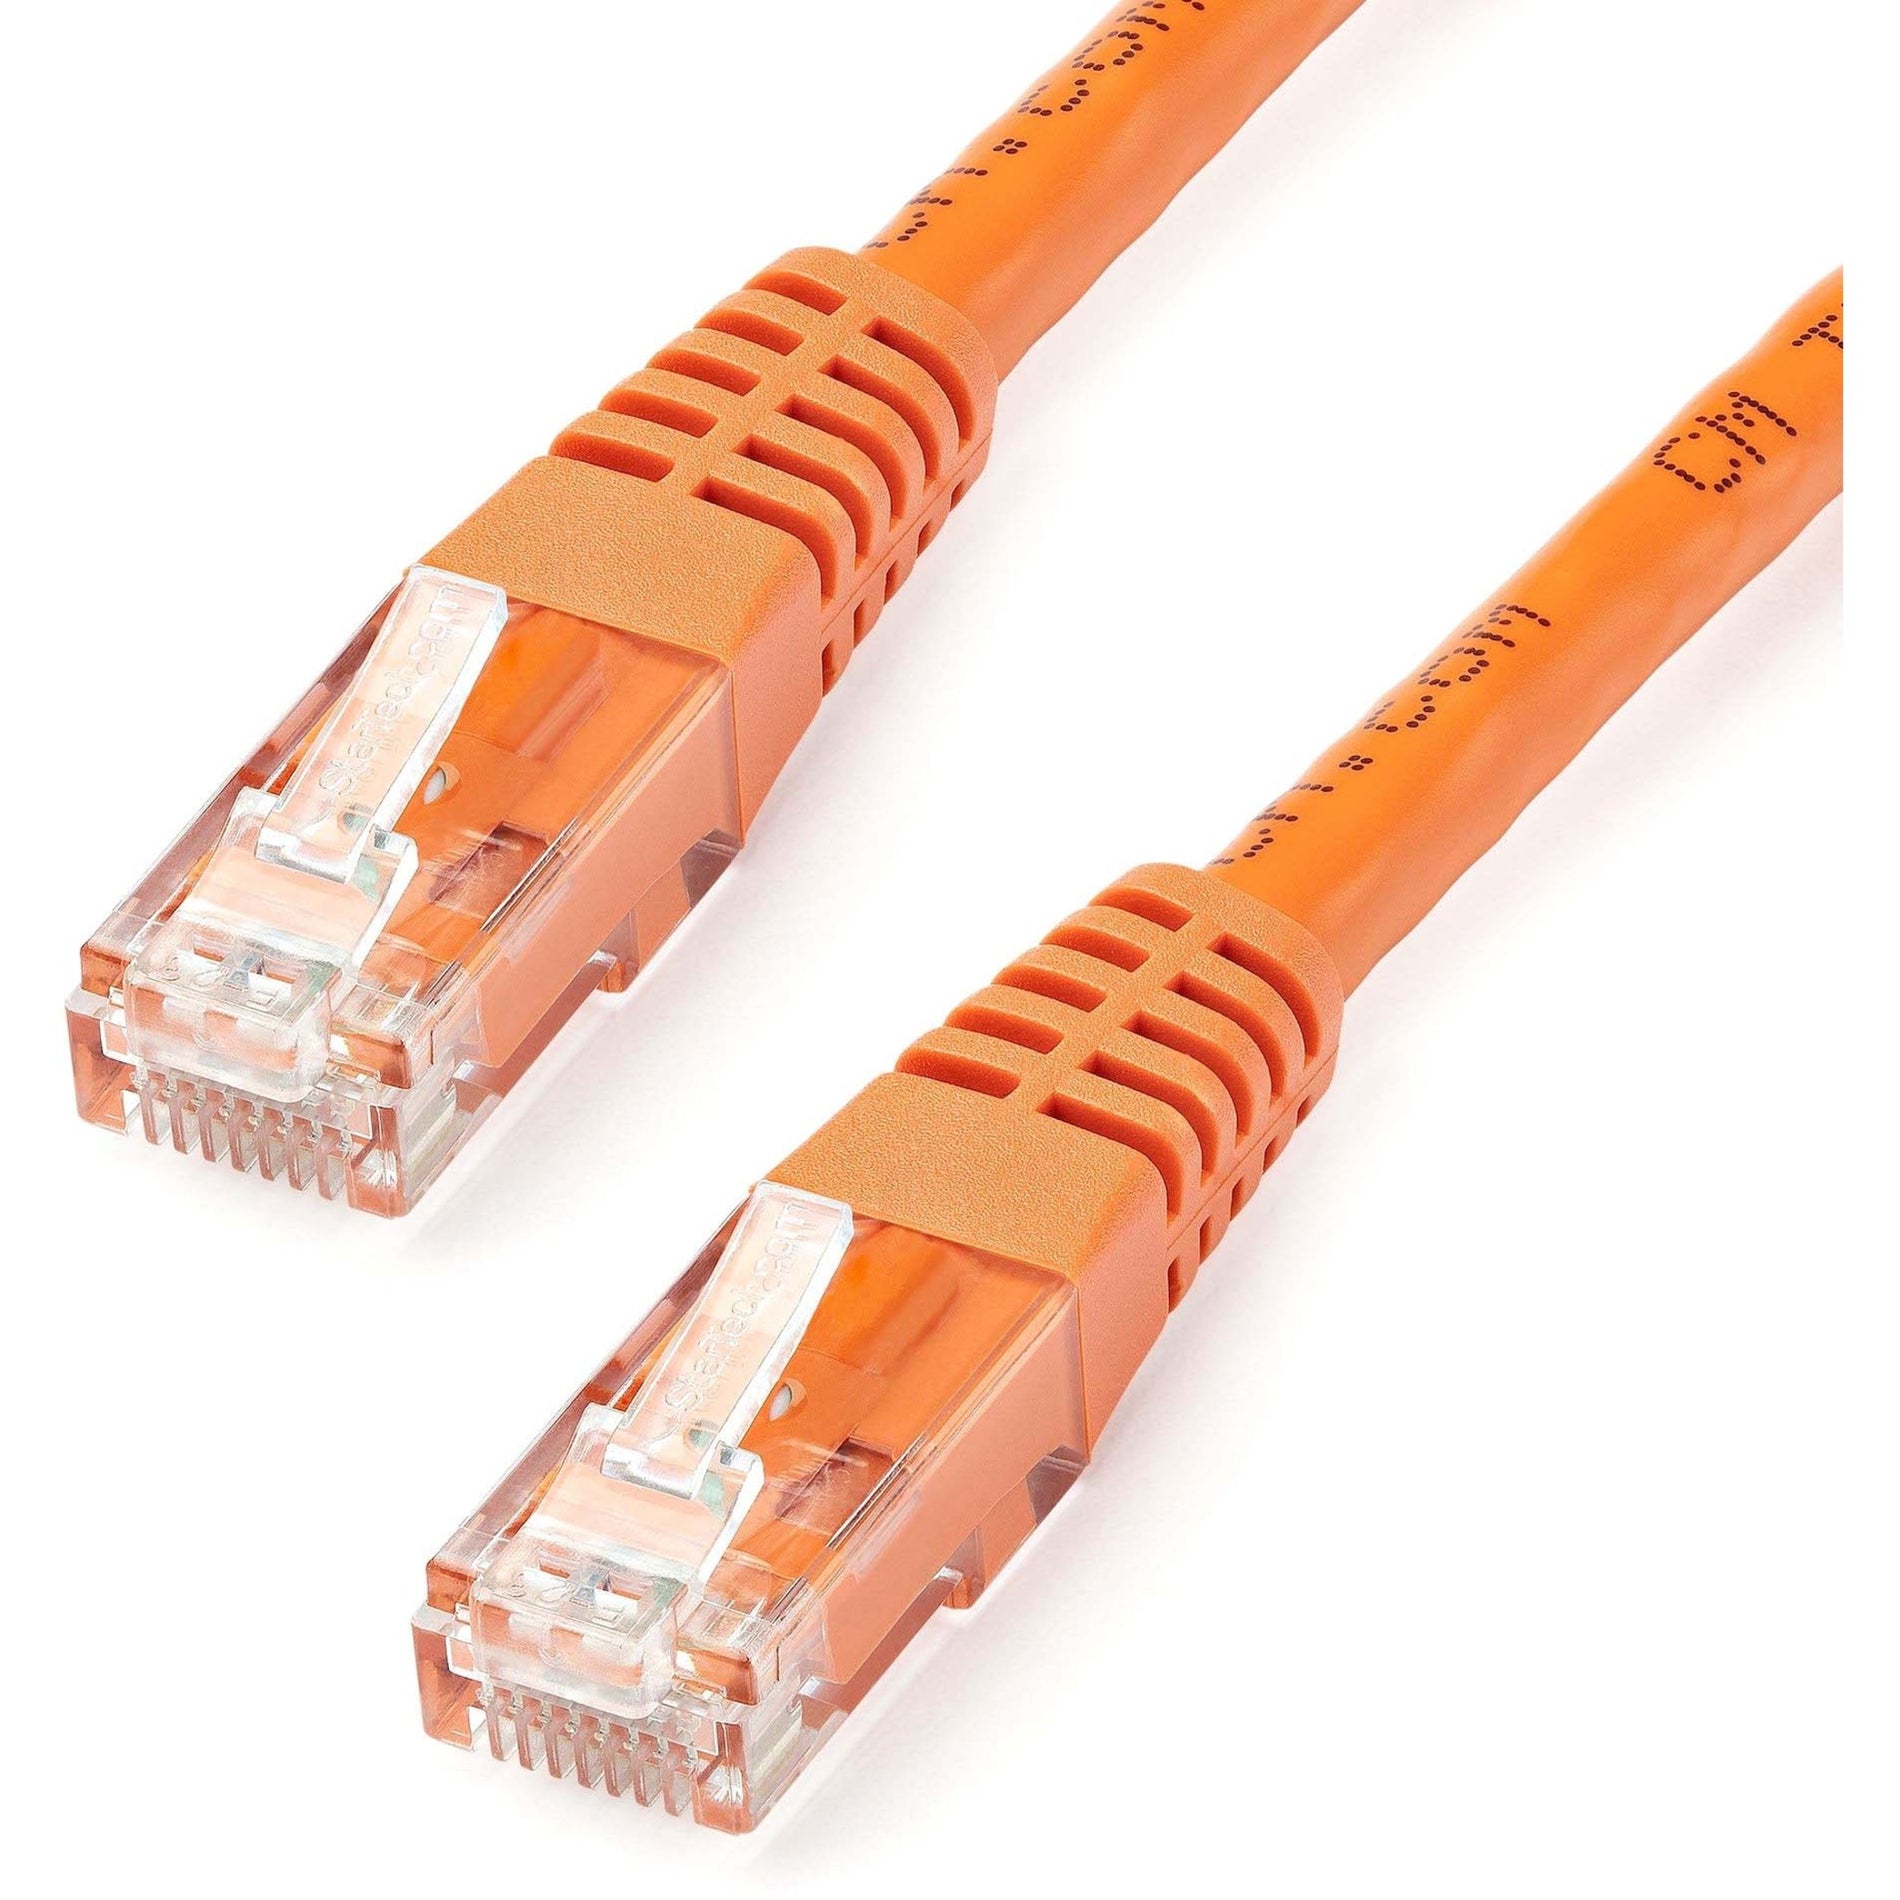 StarTech.com C6PATCH25OR 25ft Orange Cat6 UTP Patch Cable ETL Verified Gigabit Ethernet Network Cord